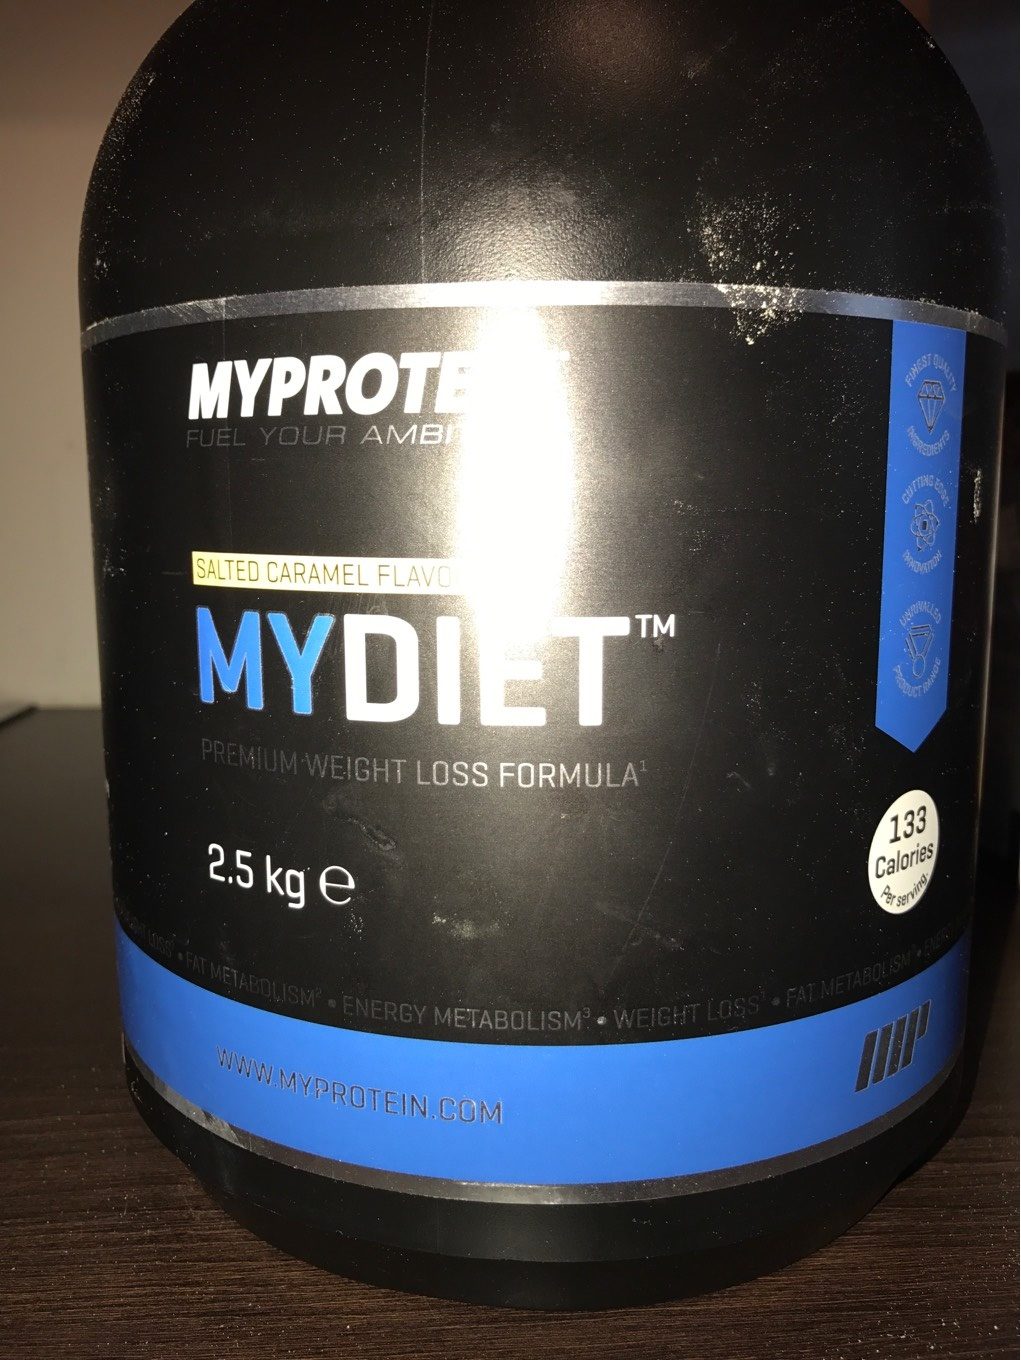 Mydiet - Produit